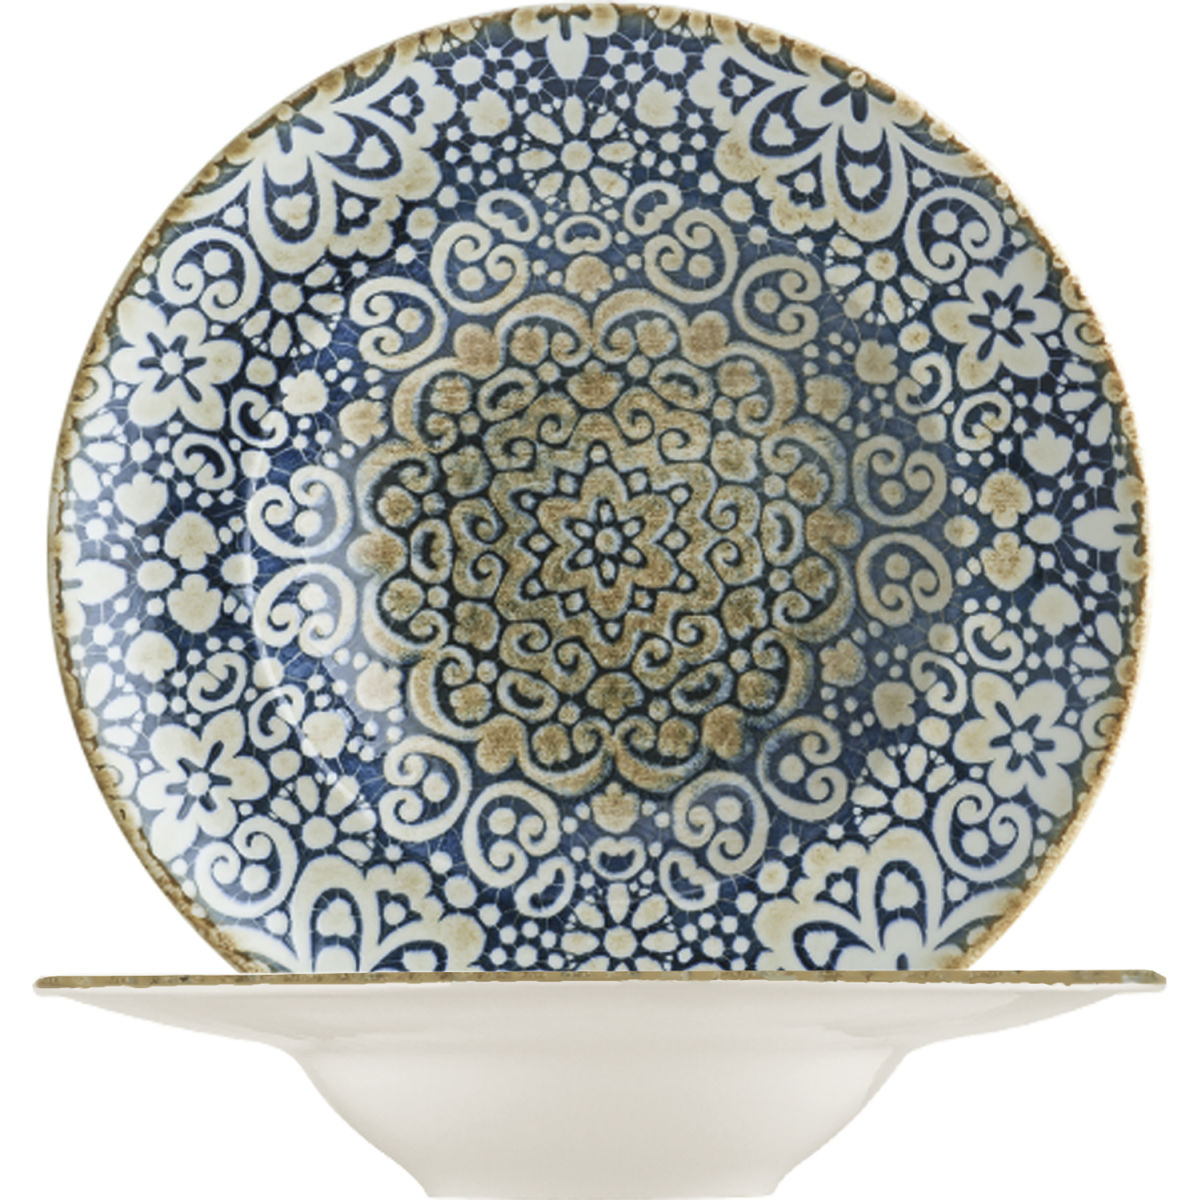 bonna pastateller alhambra; 400ml, 28x5.5 cm (Ã˜xh); /weiÃŸ/braun; rund; 6 stÃ¼ck / packung blau